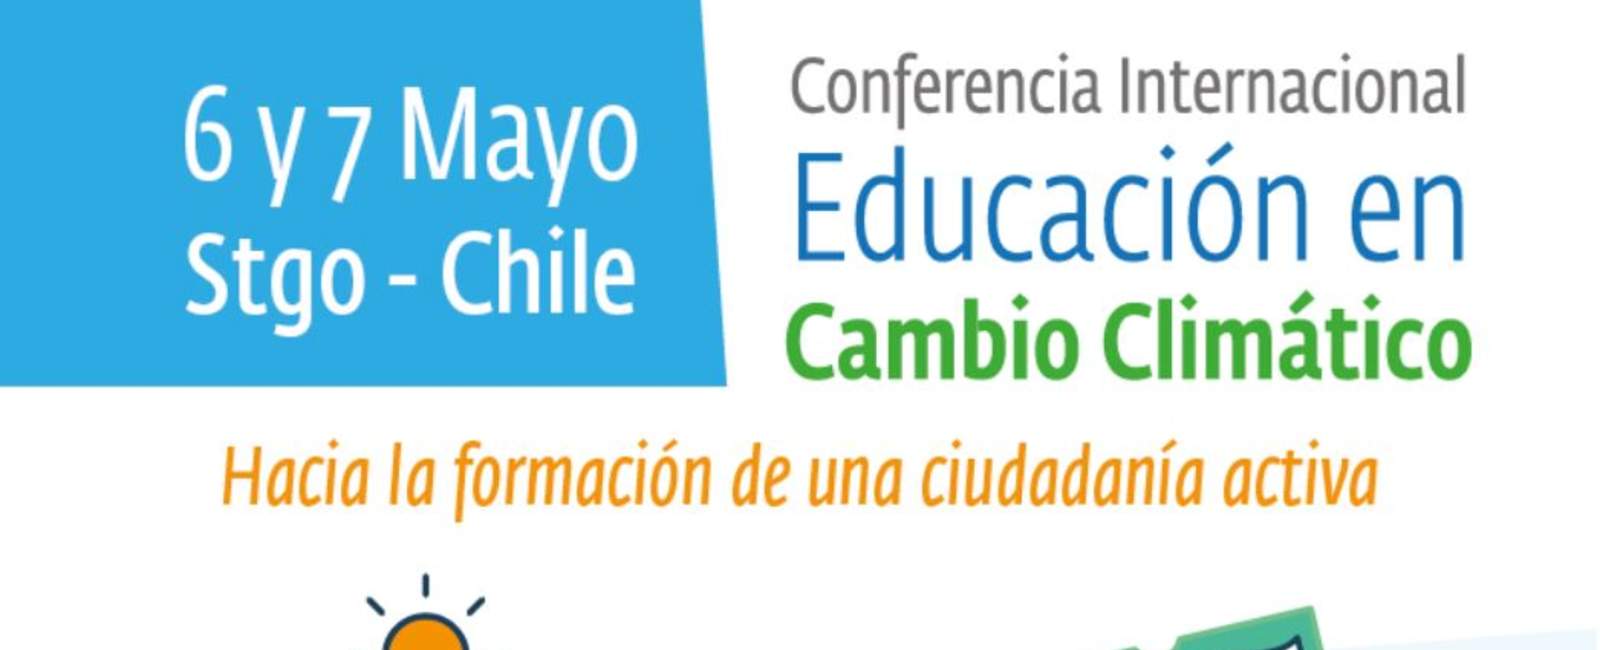 Conferencia Internacional Educación en Cambio climático